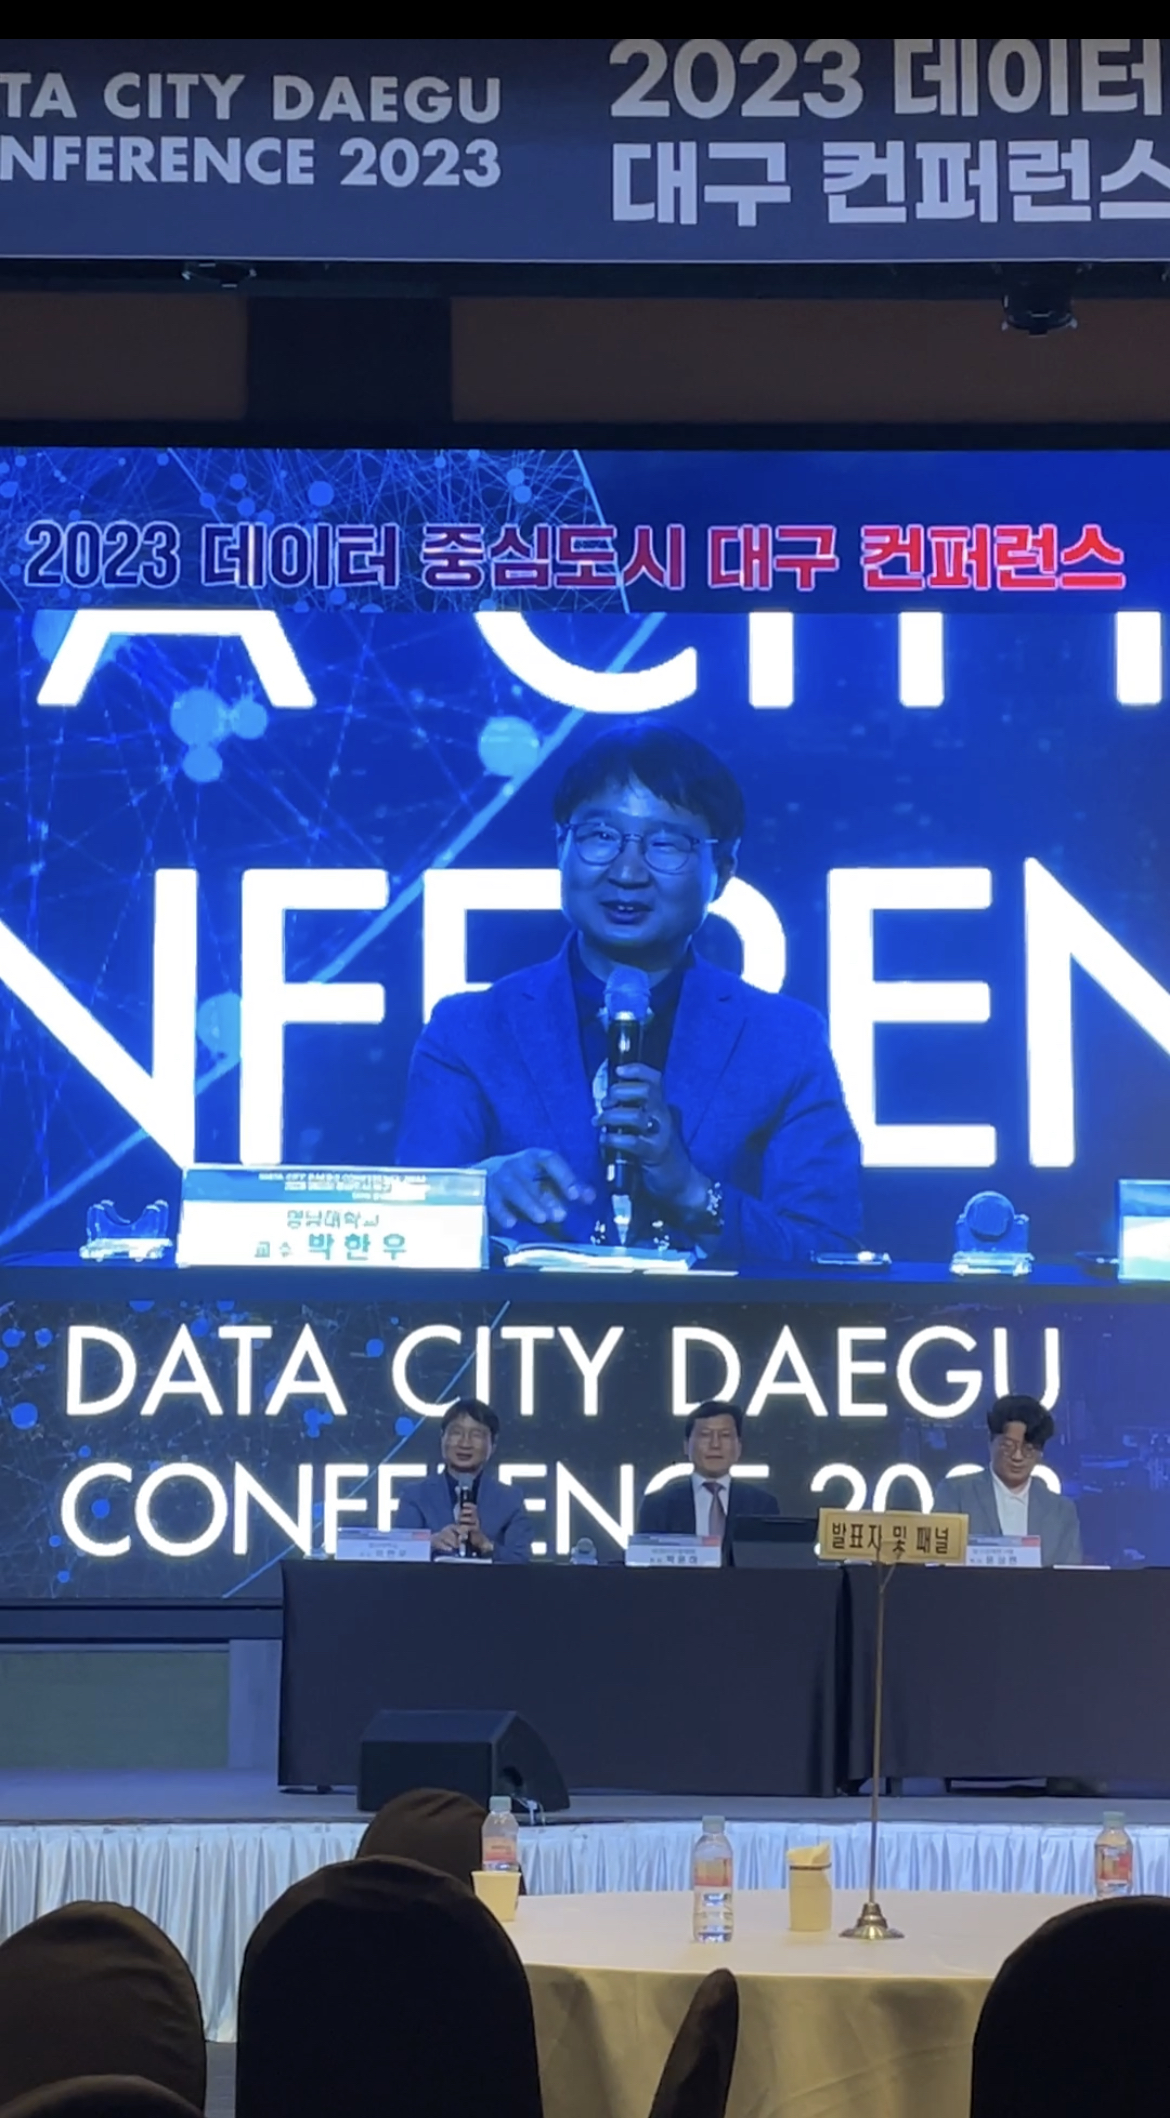 [대외협력: 국내]사이버감성연구소 2023 데이터 컨퍼런스 참석